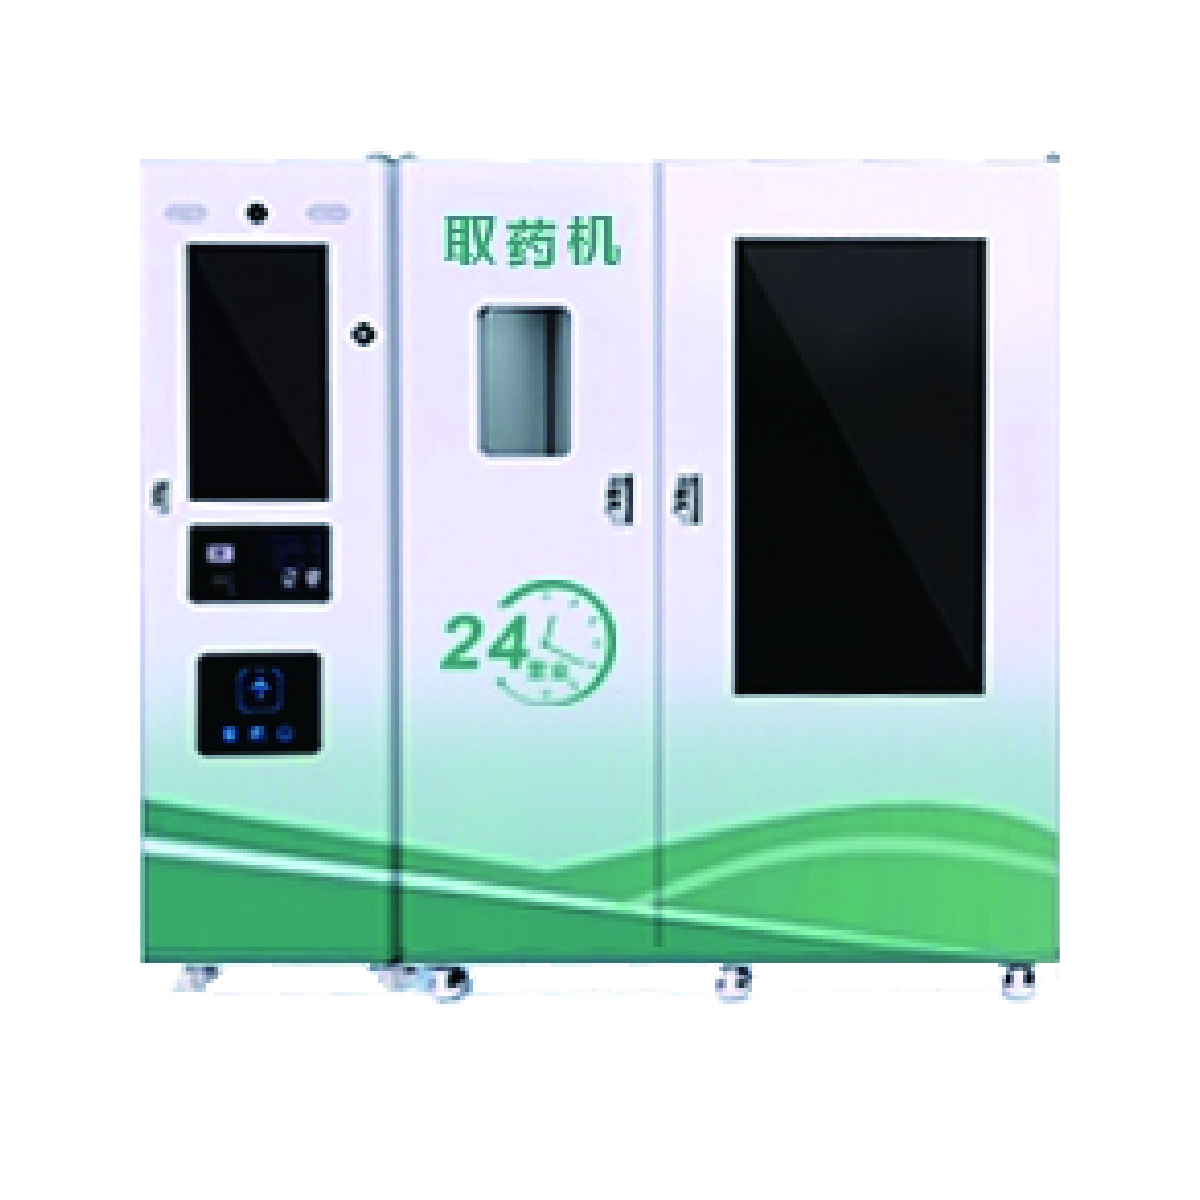 Medicine vending machine ACMVM-A